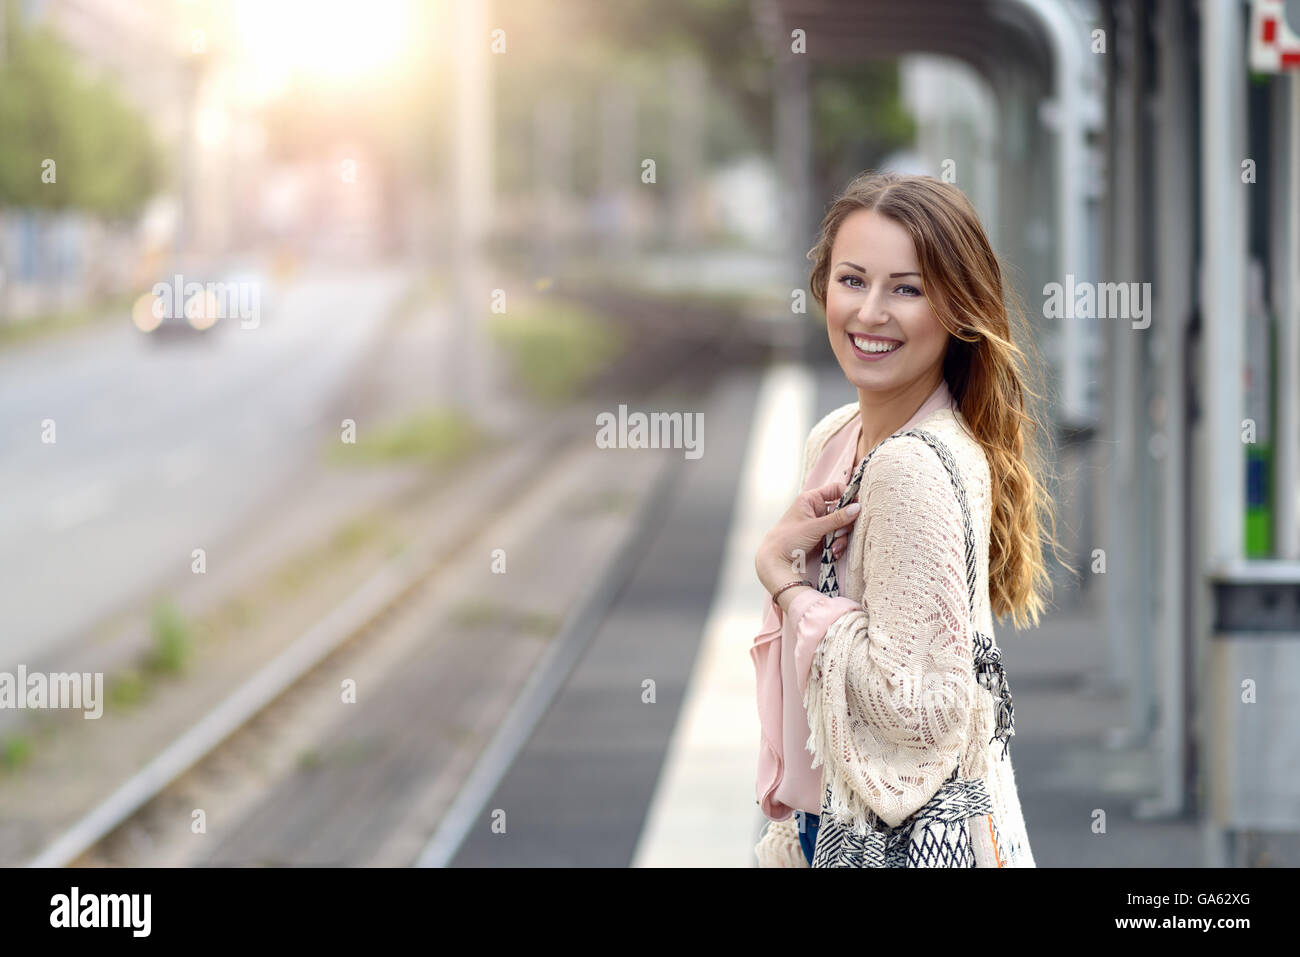 Belle jeune femme élégante en attente seul sur une plate-forme à une petite station urbaine regardant la caméra avec un sourire heureux, co Banque D'Images